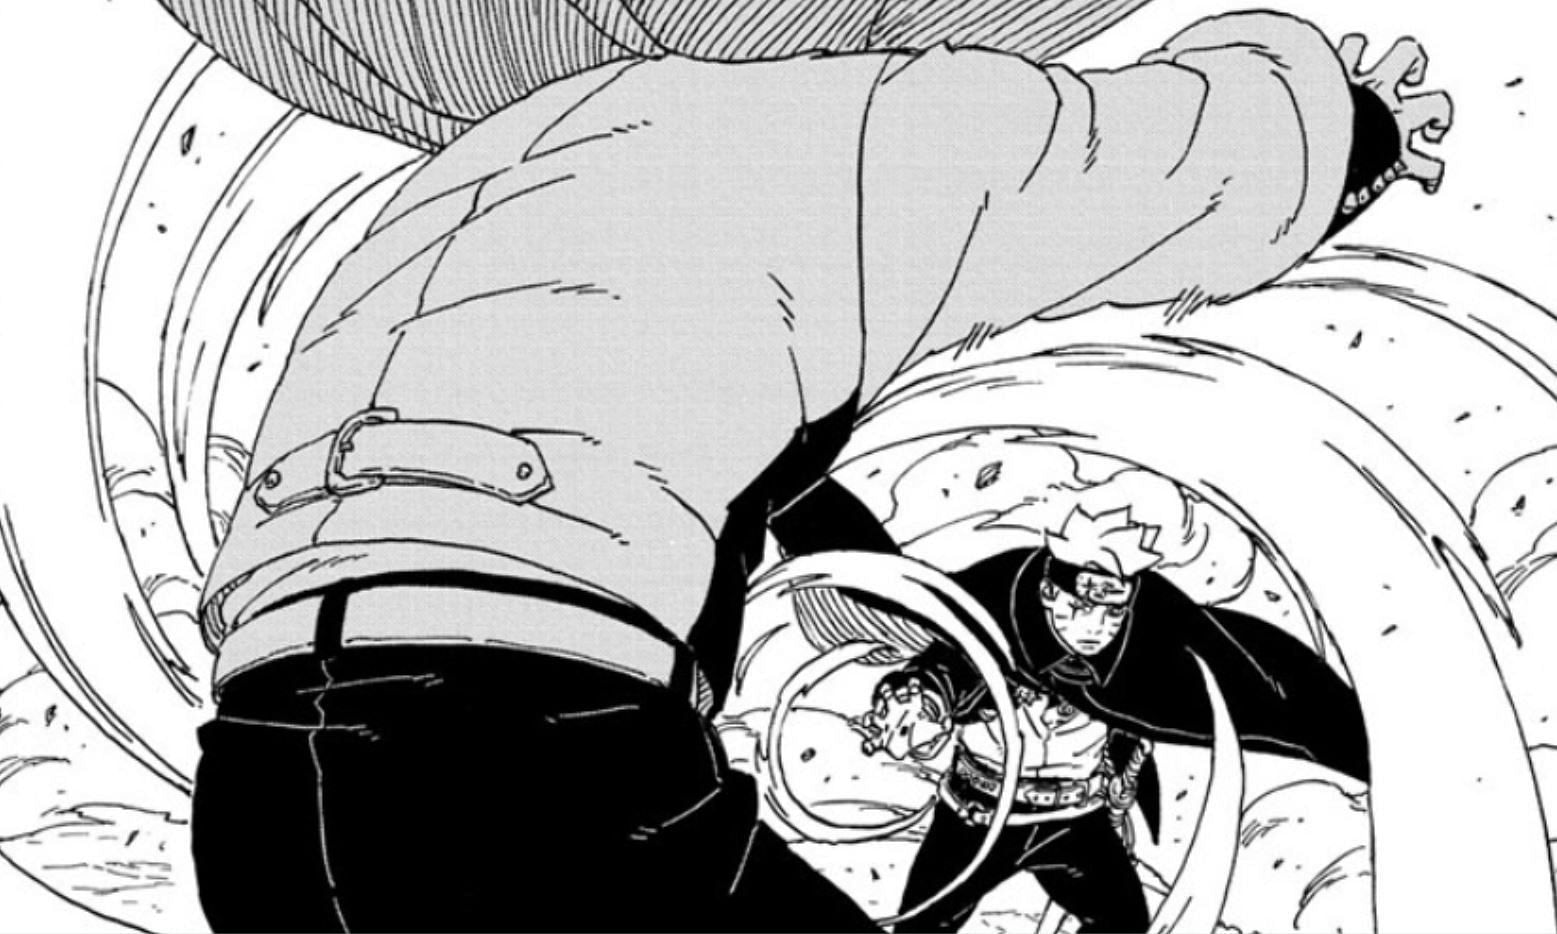 Code being attacked by Rasengan Uzuhiko in the manga (Image via Shueisha)